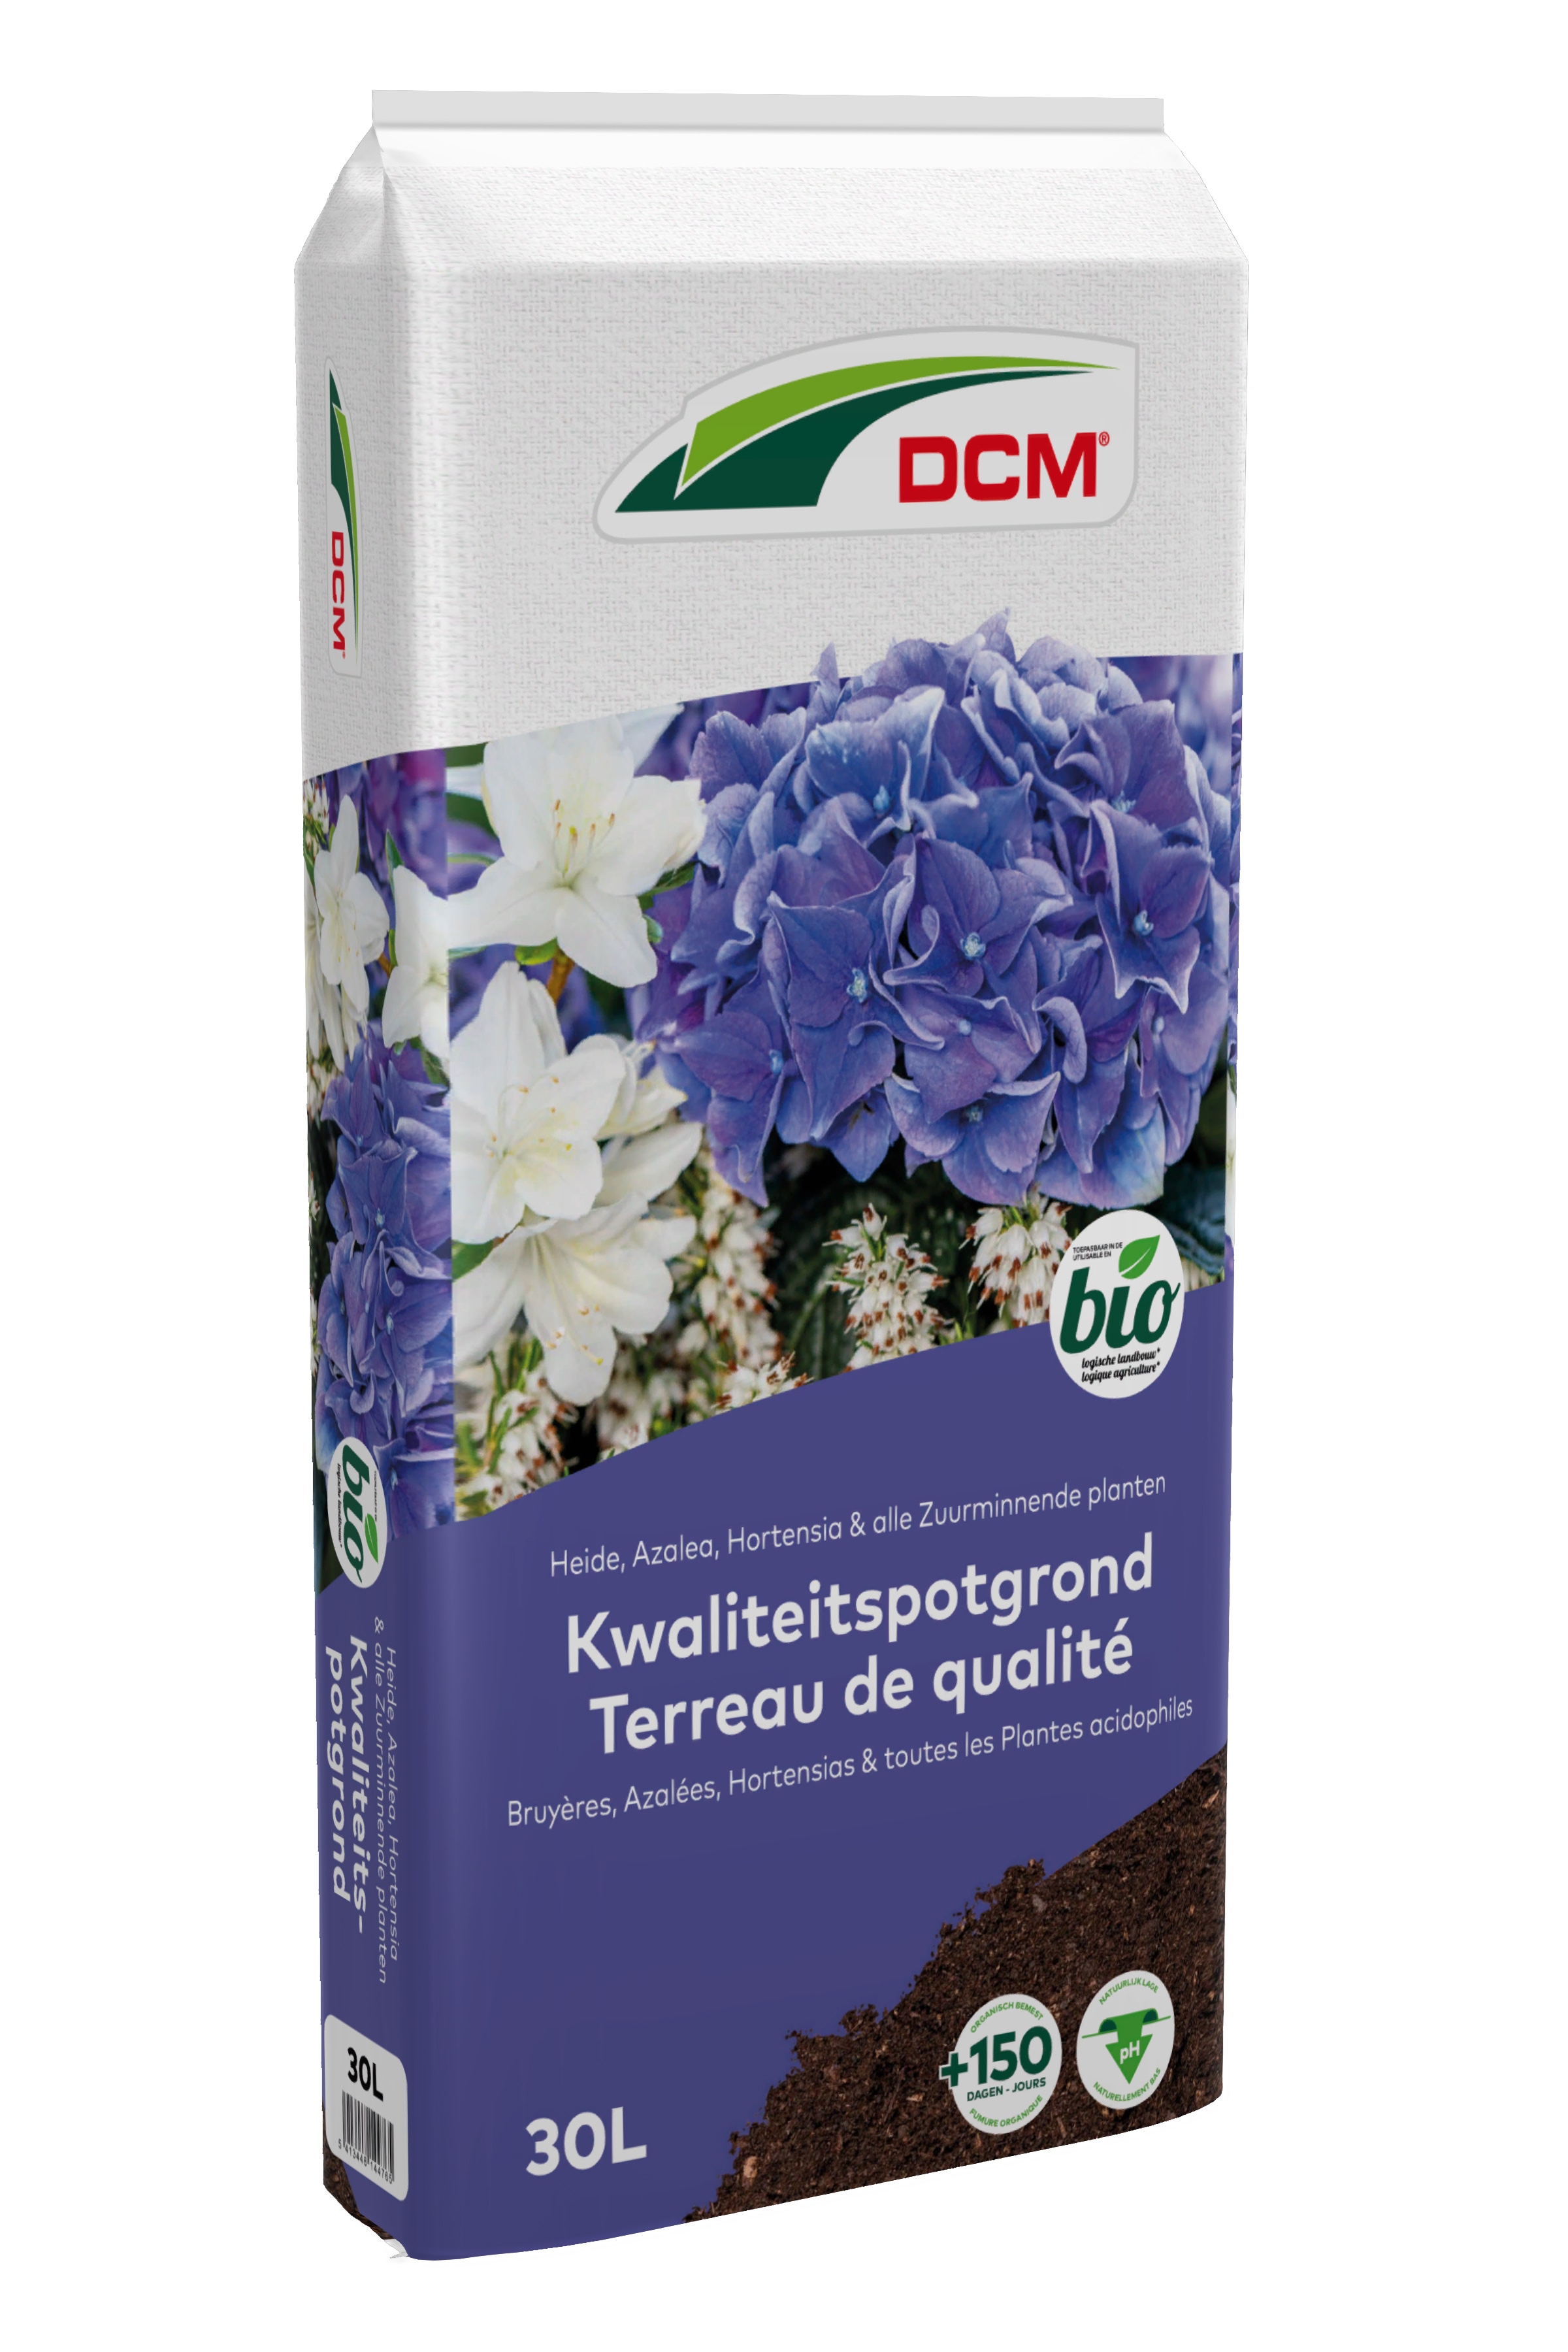 DCM Potgrond voor heide en zuurminnende planten 30L